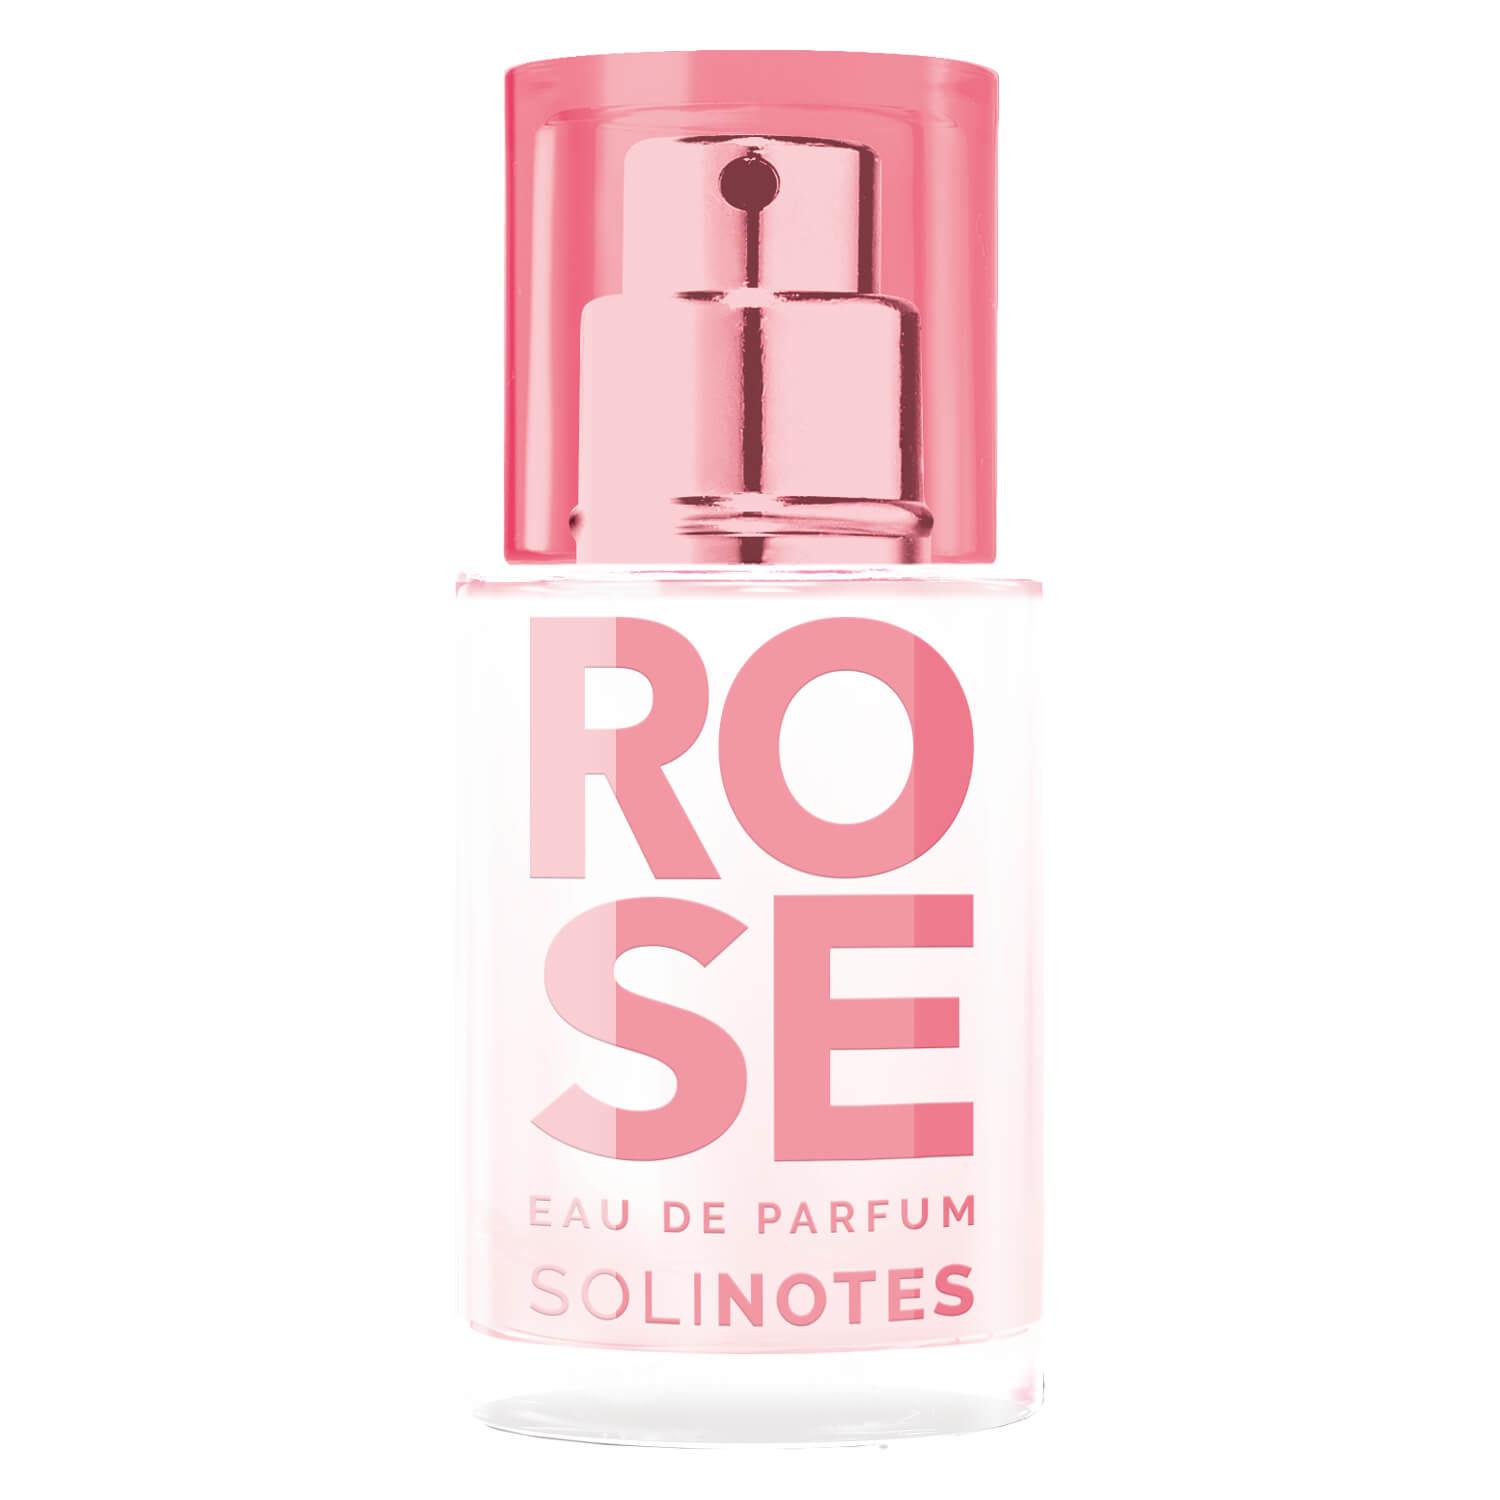 Solinotes - Rose Eau De Parfum